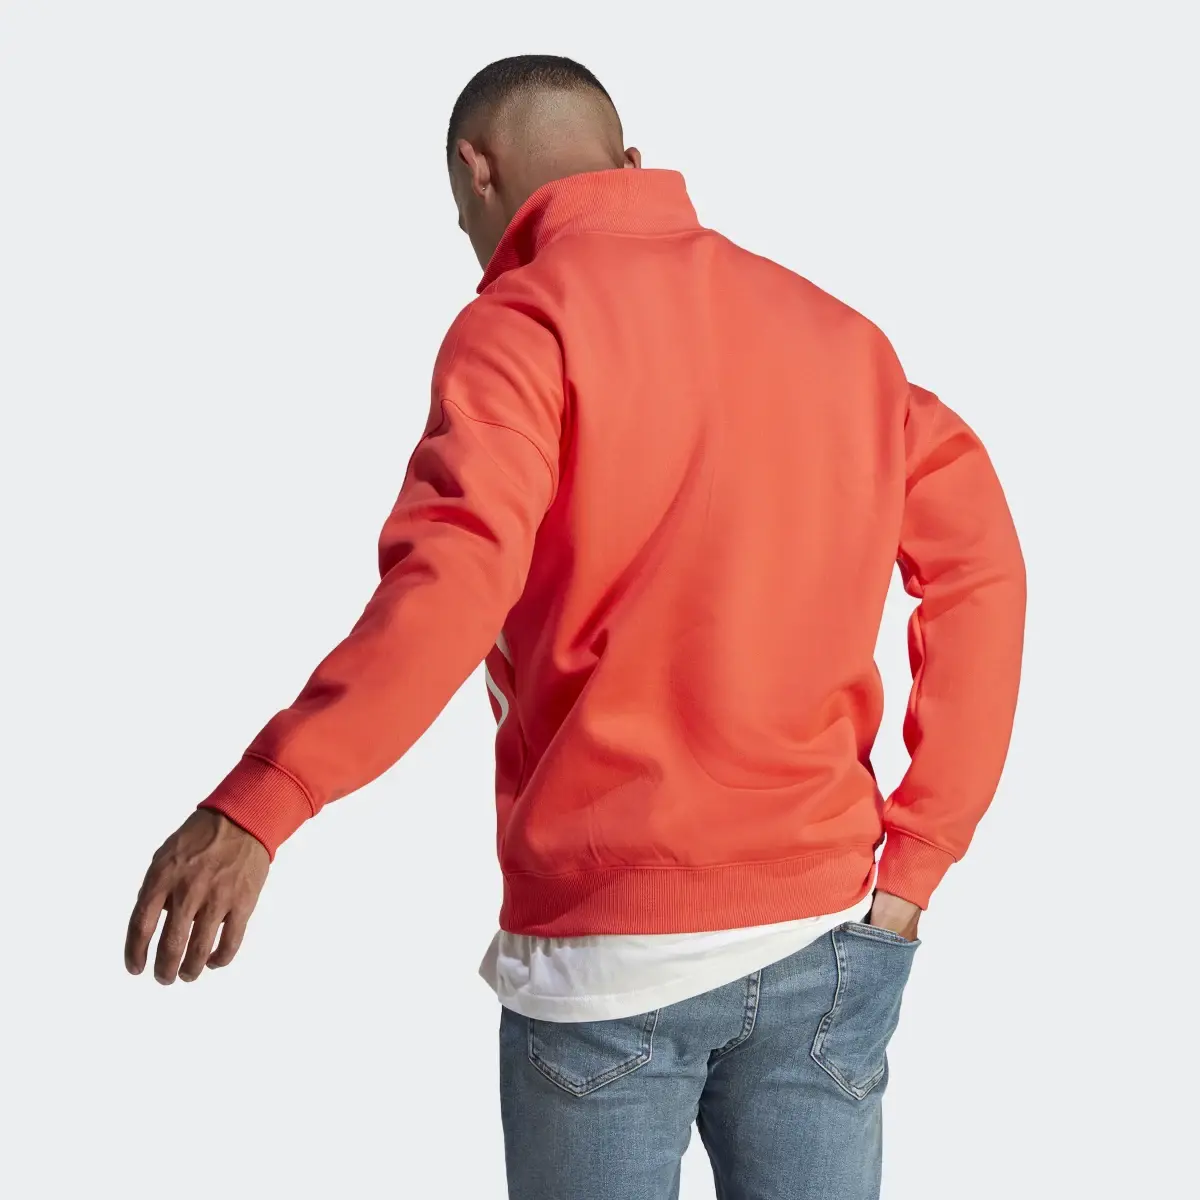 Adidas Colorblock Quarter Zip Sweatshirt. 3